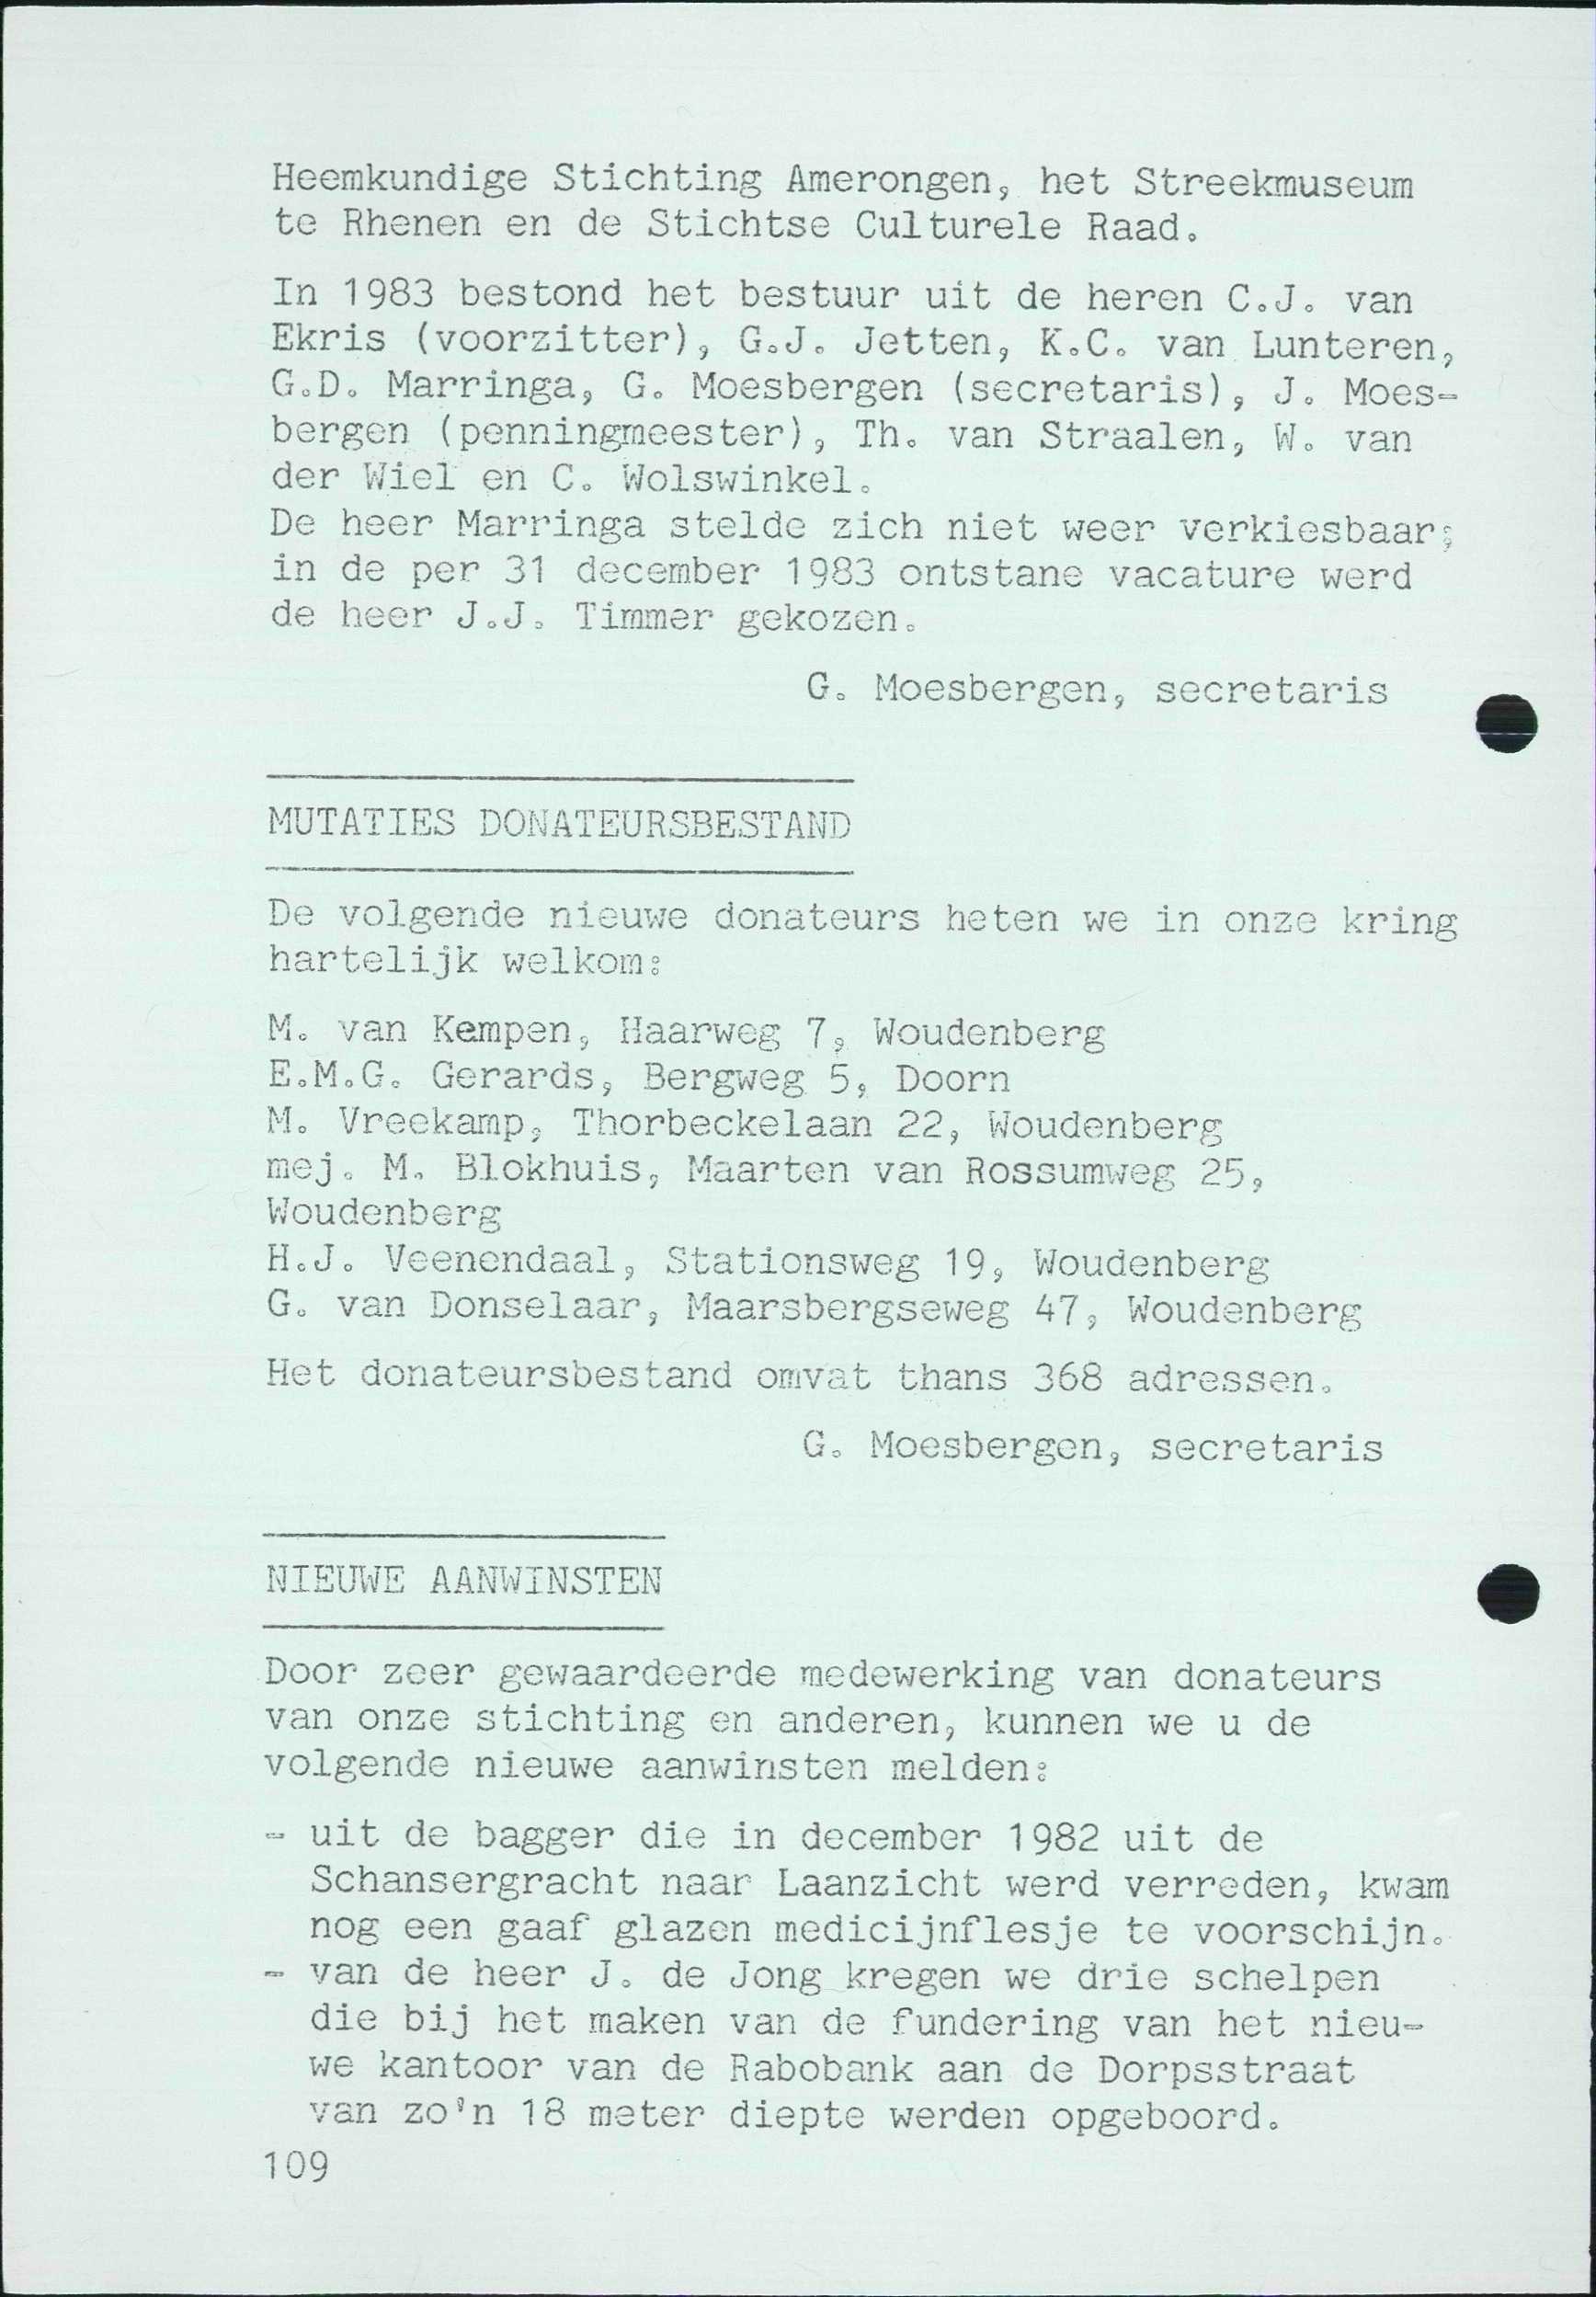 Heerakundige Stichting Amerongen s het Streekmuseum te Rhenen en de Stichtse Culturele Raad, In 1983 bestond het bestuur uit de heren C.J. van Ekris (voorzitter), G.J. Jetten, K C. van Lunteren, GoD.